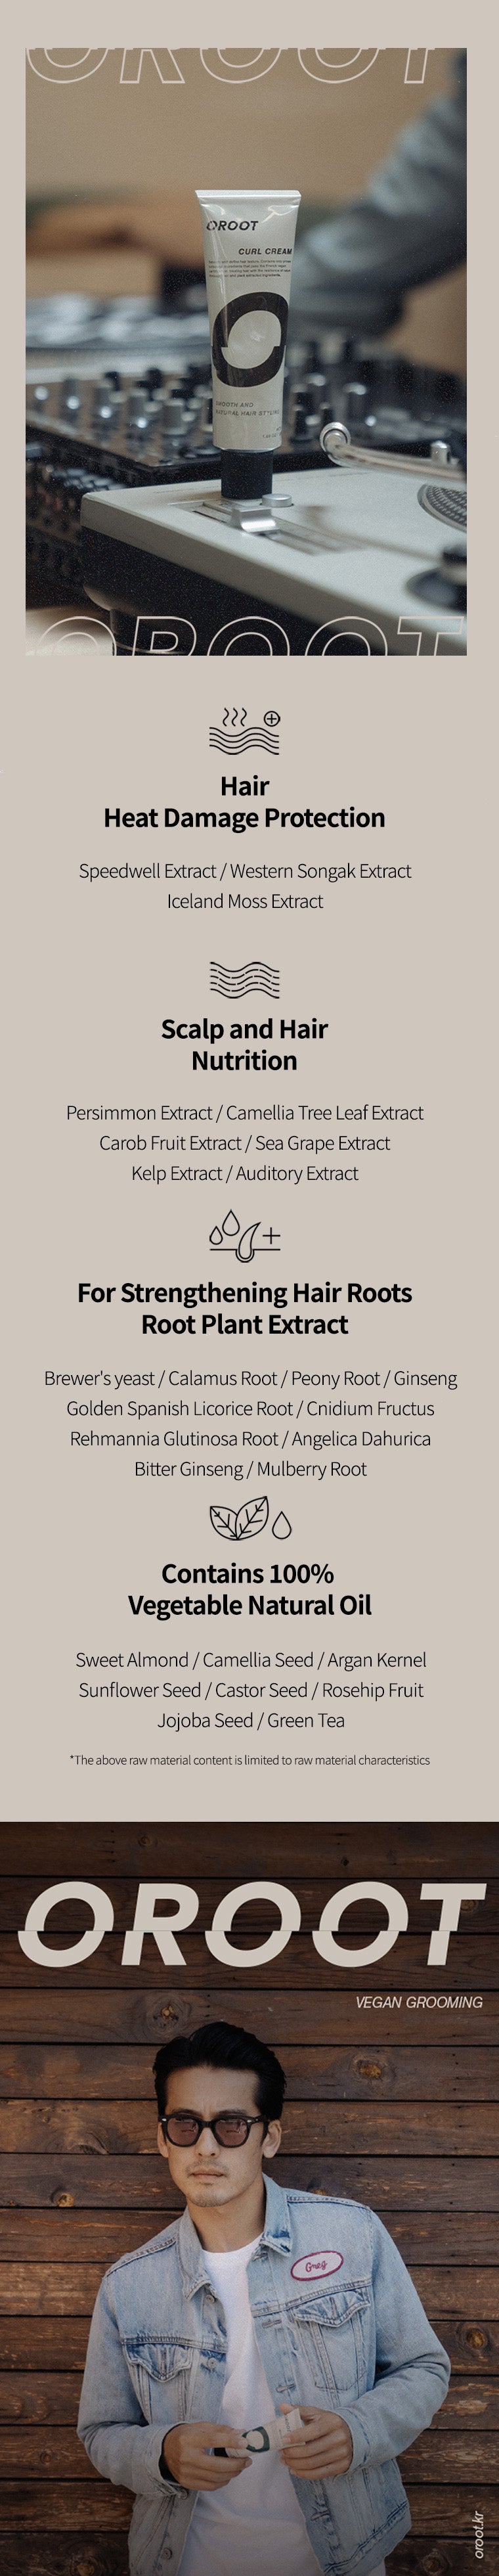 the ingredient of OROOT Vegan Curl Cream